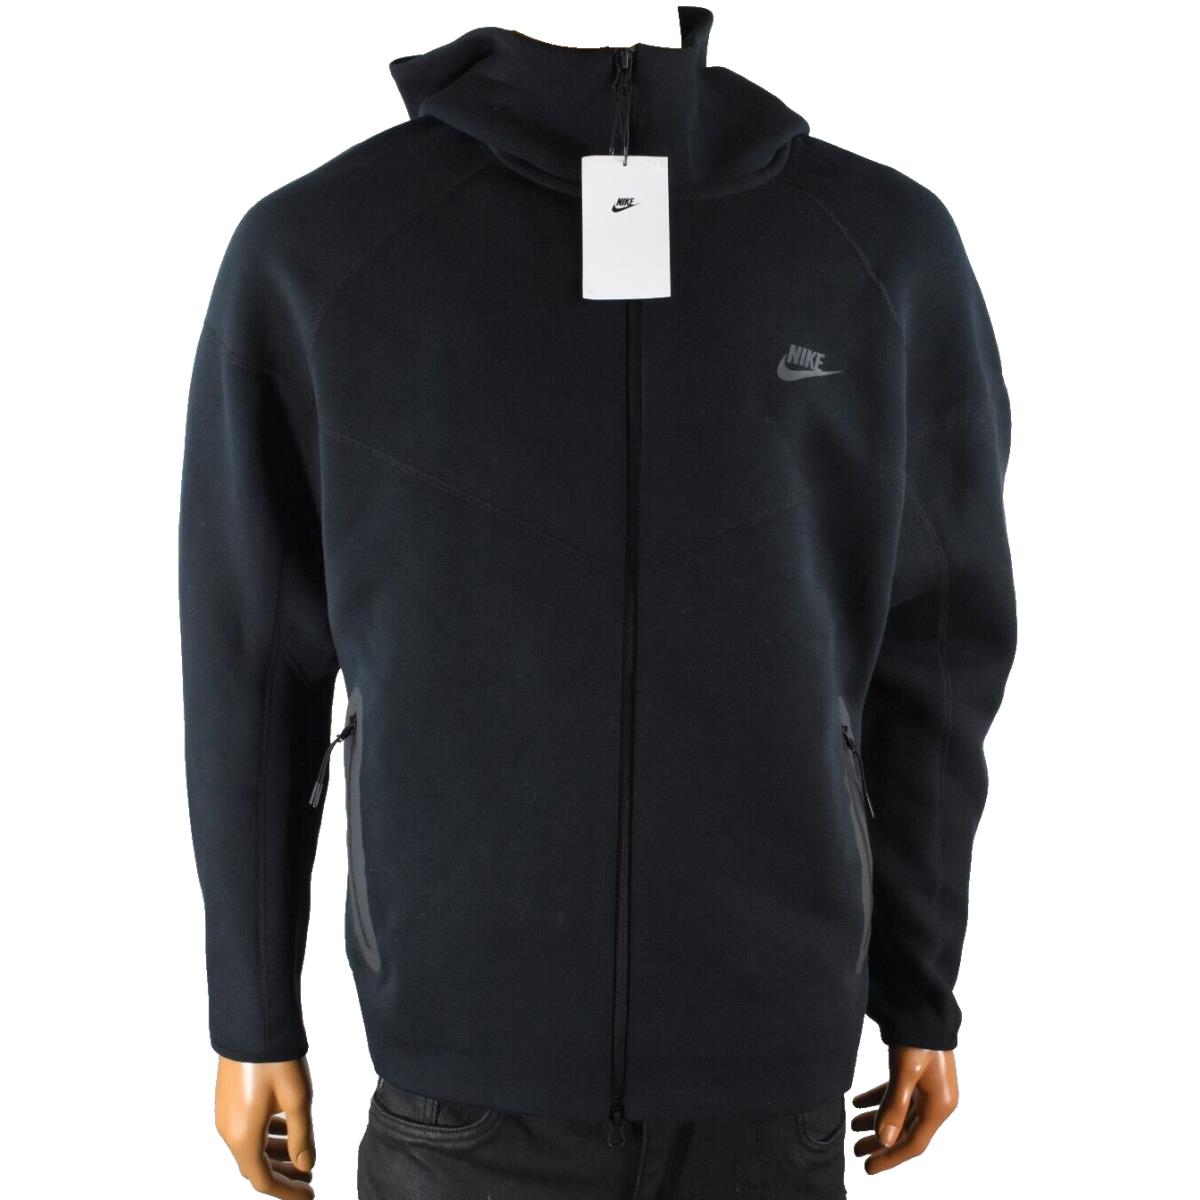 Nike Mens Hoodie Jacket XL Black Pockets Full Zip